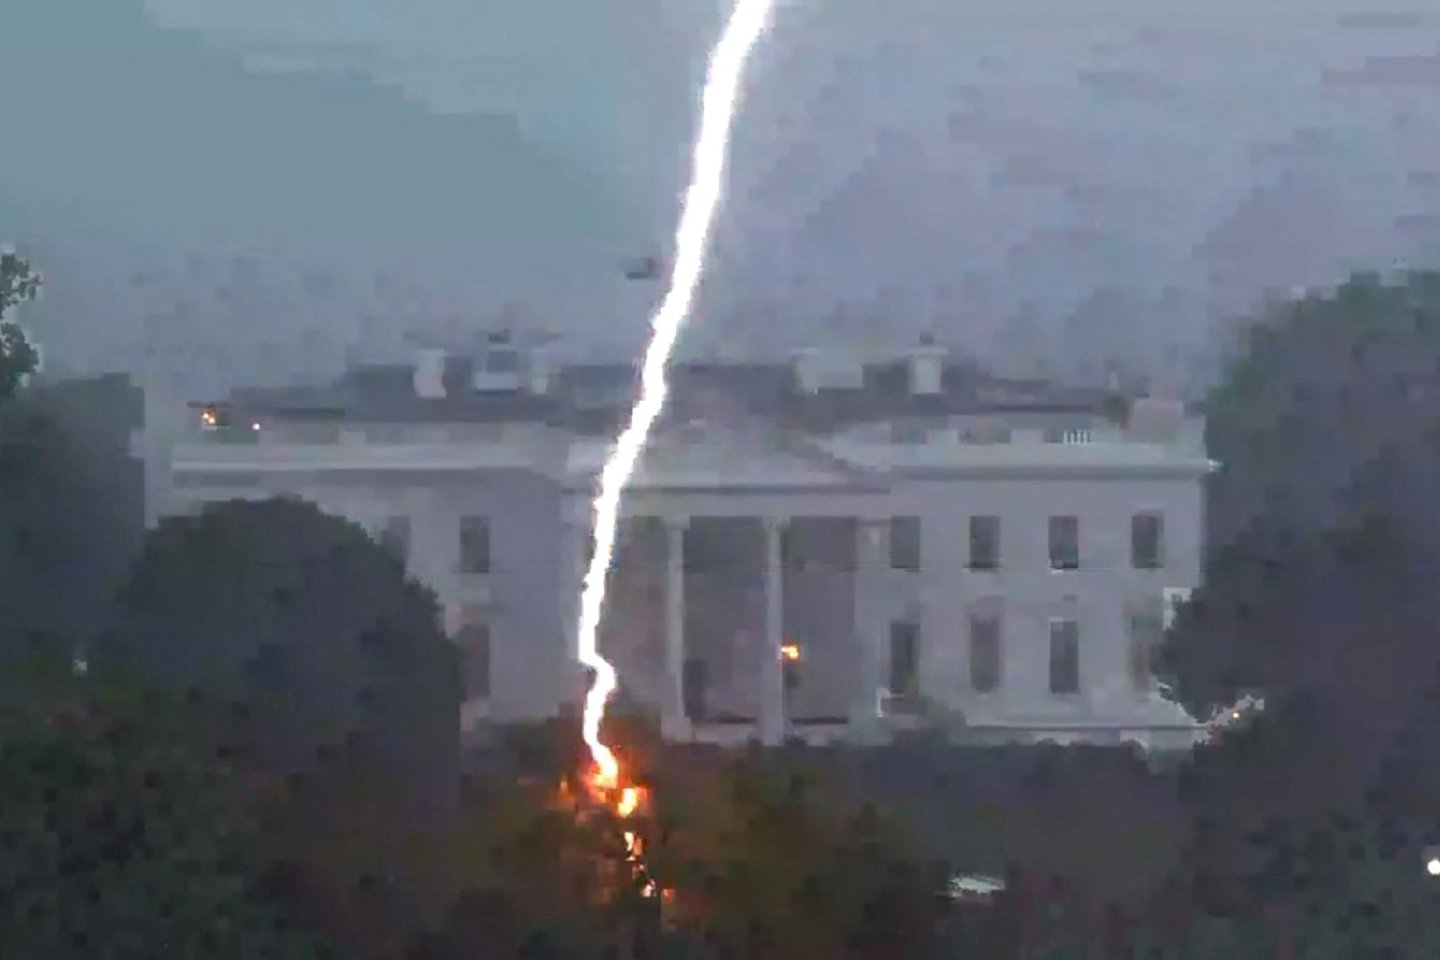  Žaibas trenkė visai šalia Baltųjų rūmų.<br> Reuters/Scanpix nuotr.